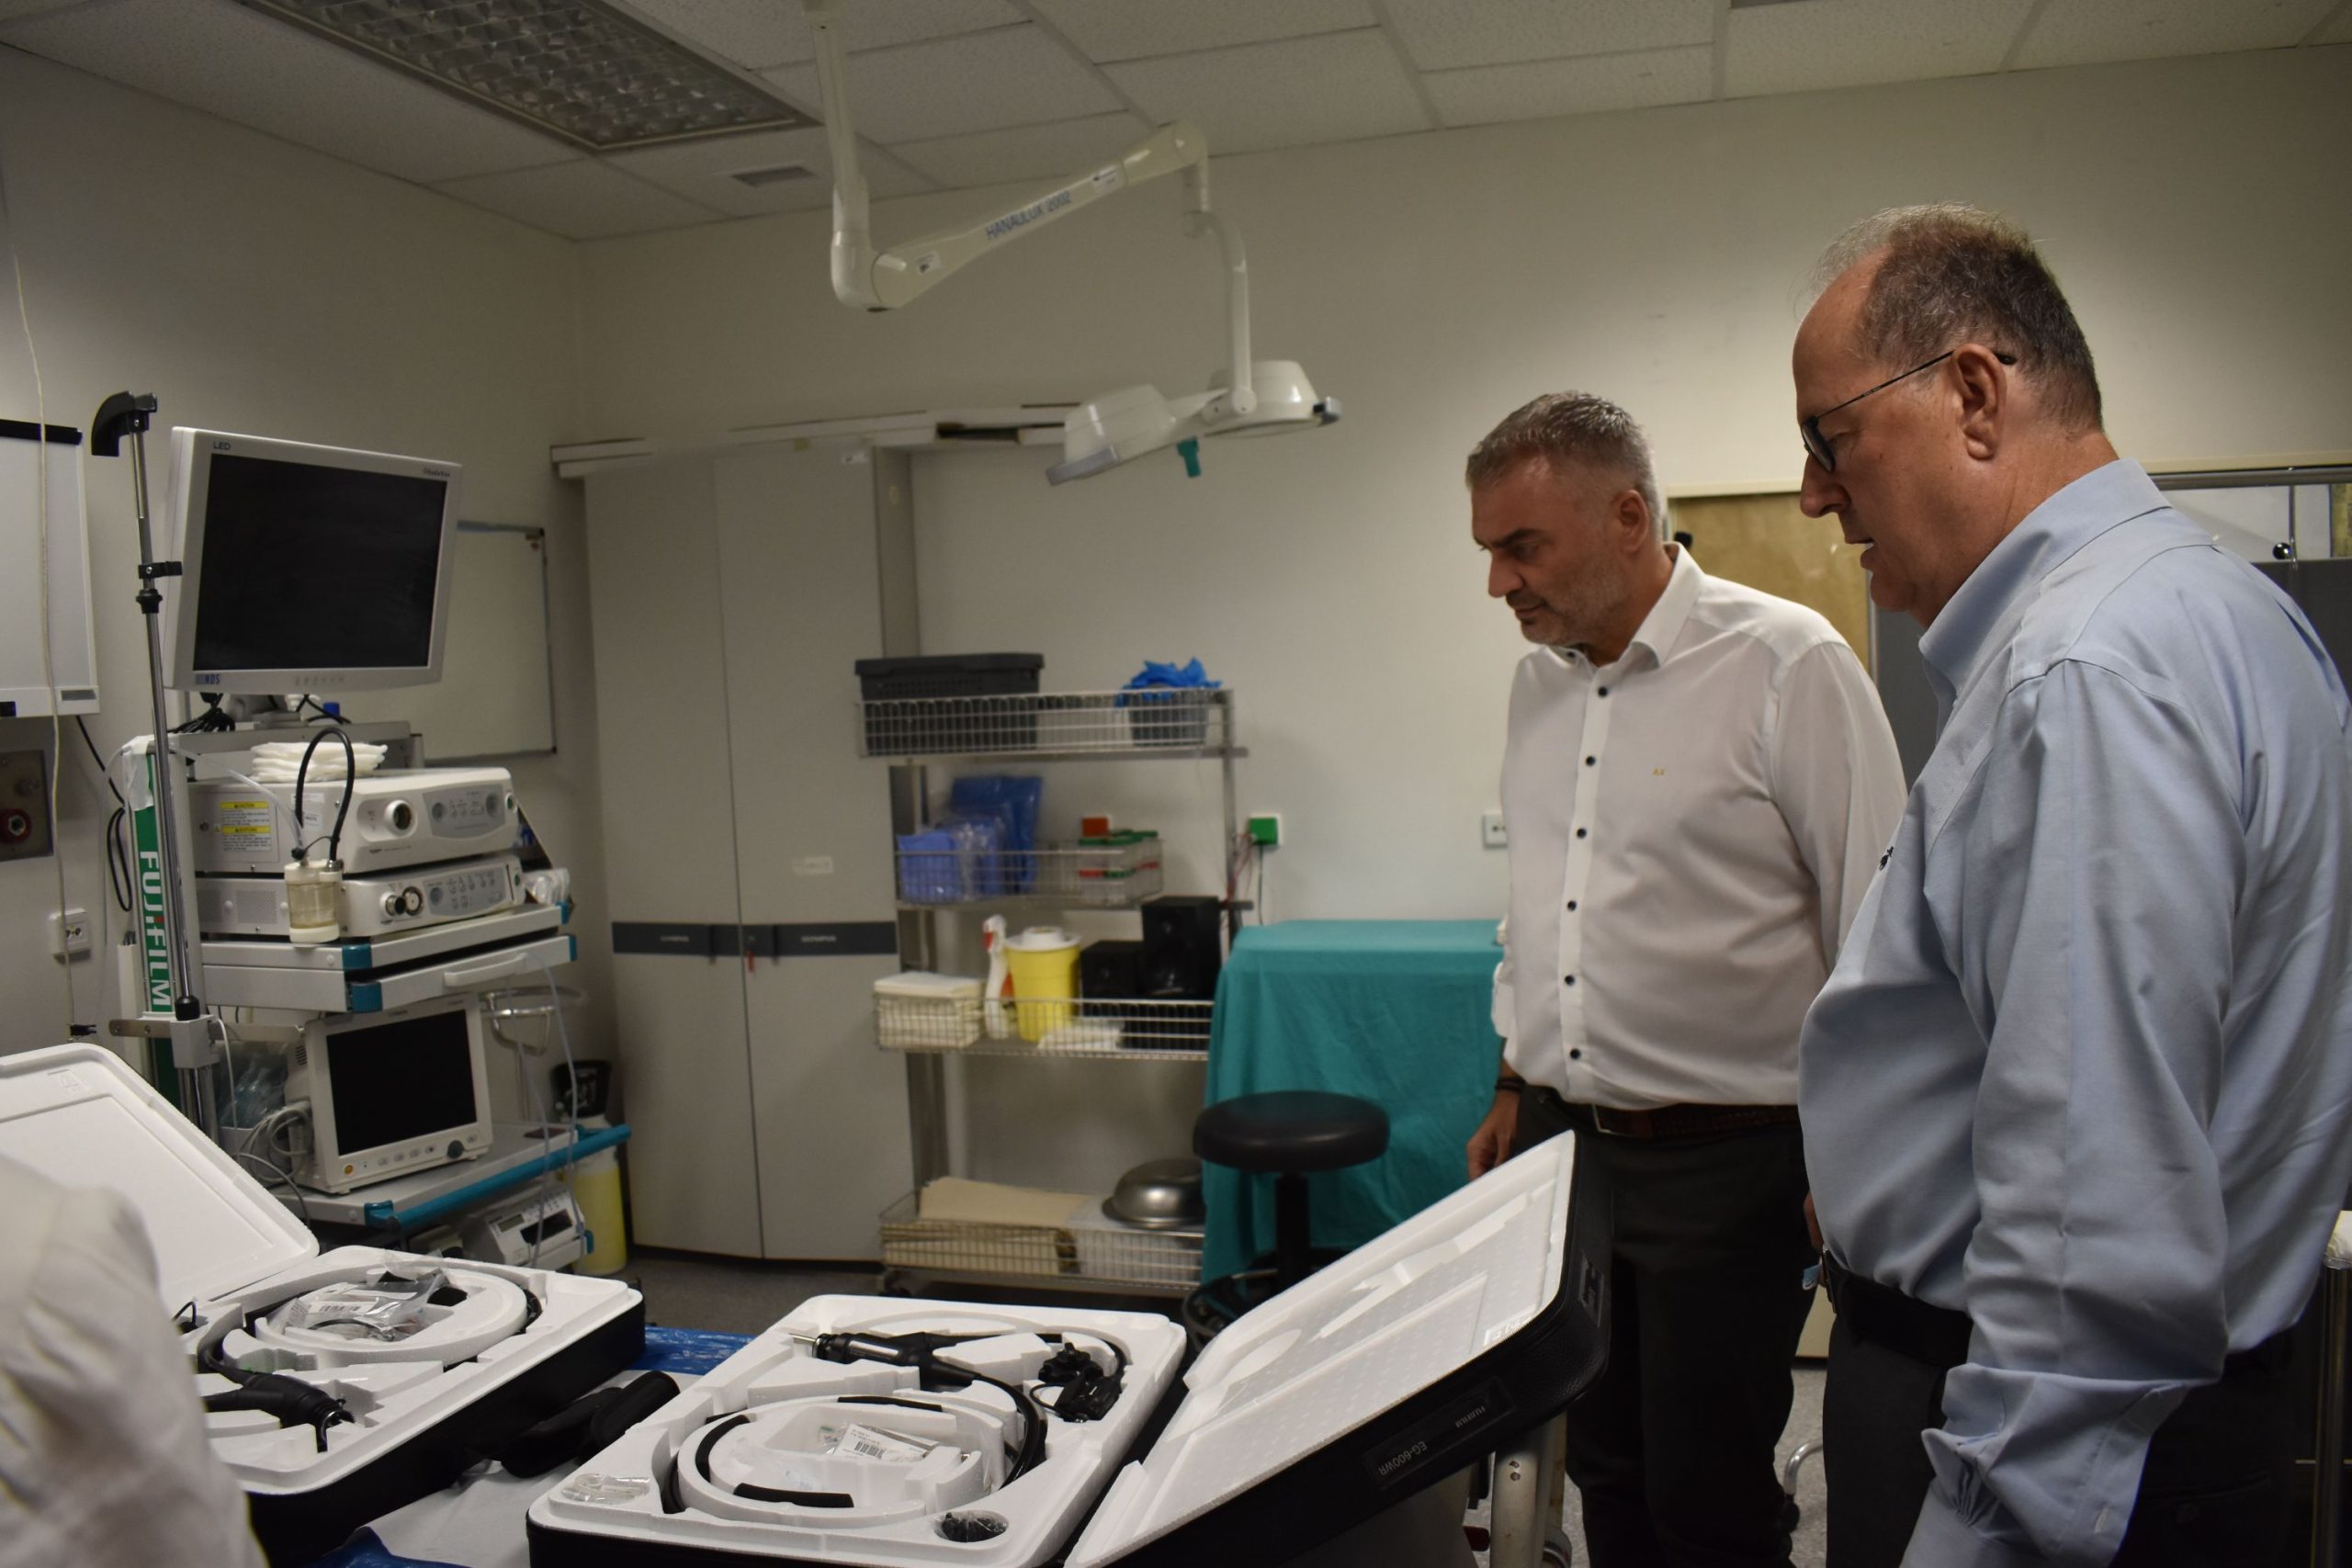 Νέος ιατρομηχανολογικός εξοπλισμός παραδόθηκε από τον περιφερειάρχη Πελοποννήσου Π. Νίκα στο Νοσοκομείο Καλαμάτας